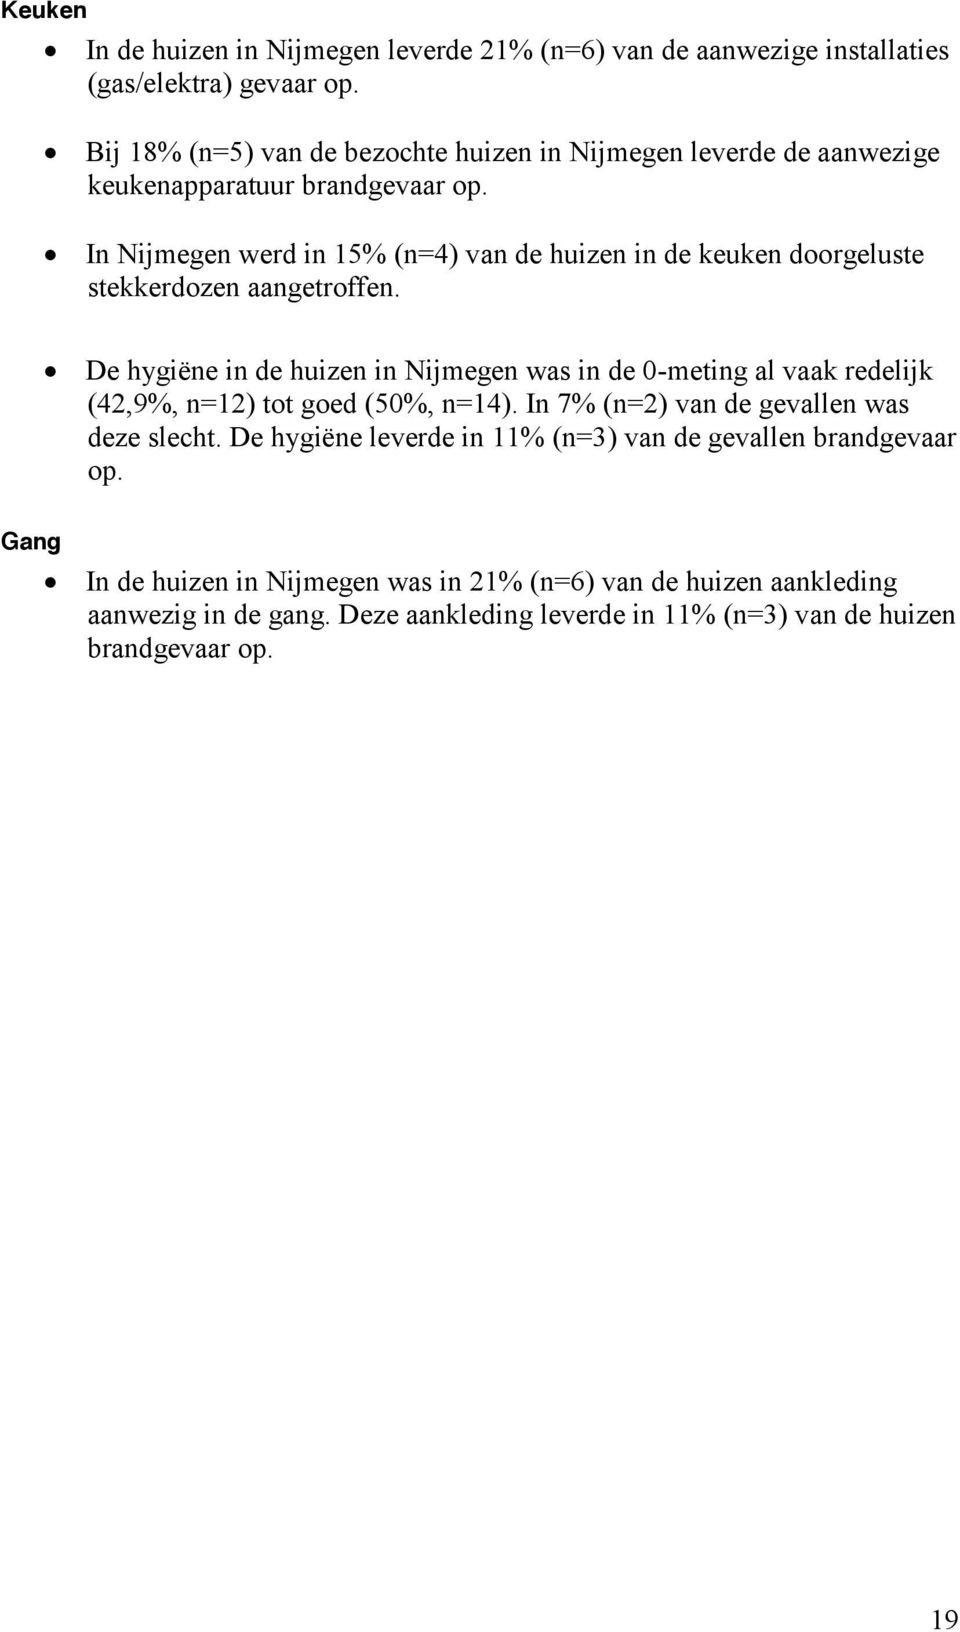 In Nijmegen werd in 15% (n=4) van de huizen in de keuken doorgeluste stekkerdozen aangetroffen.